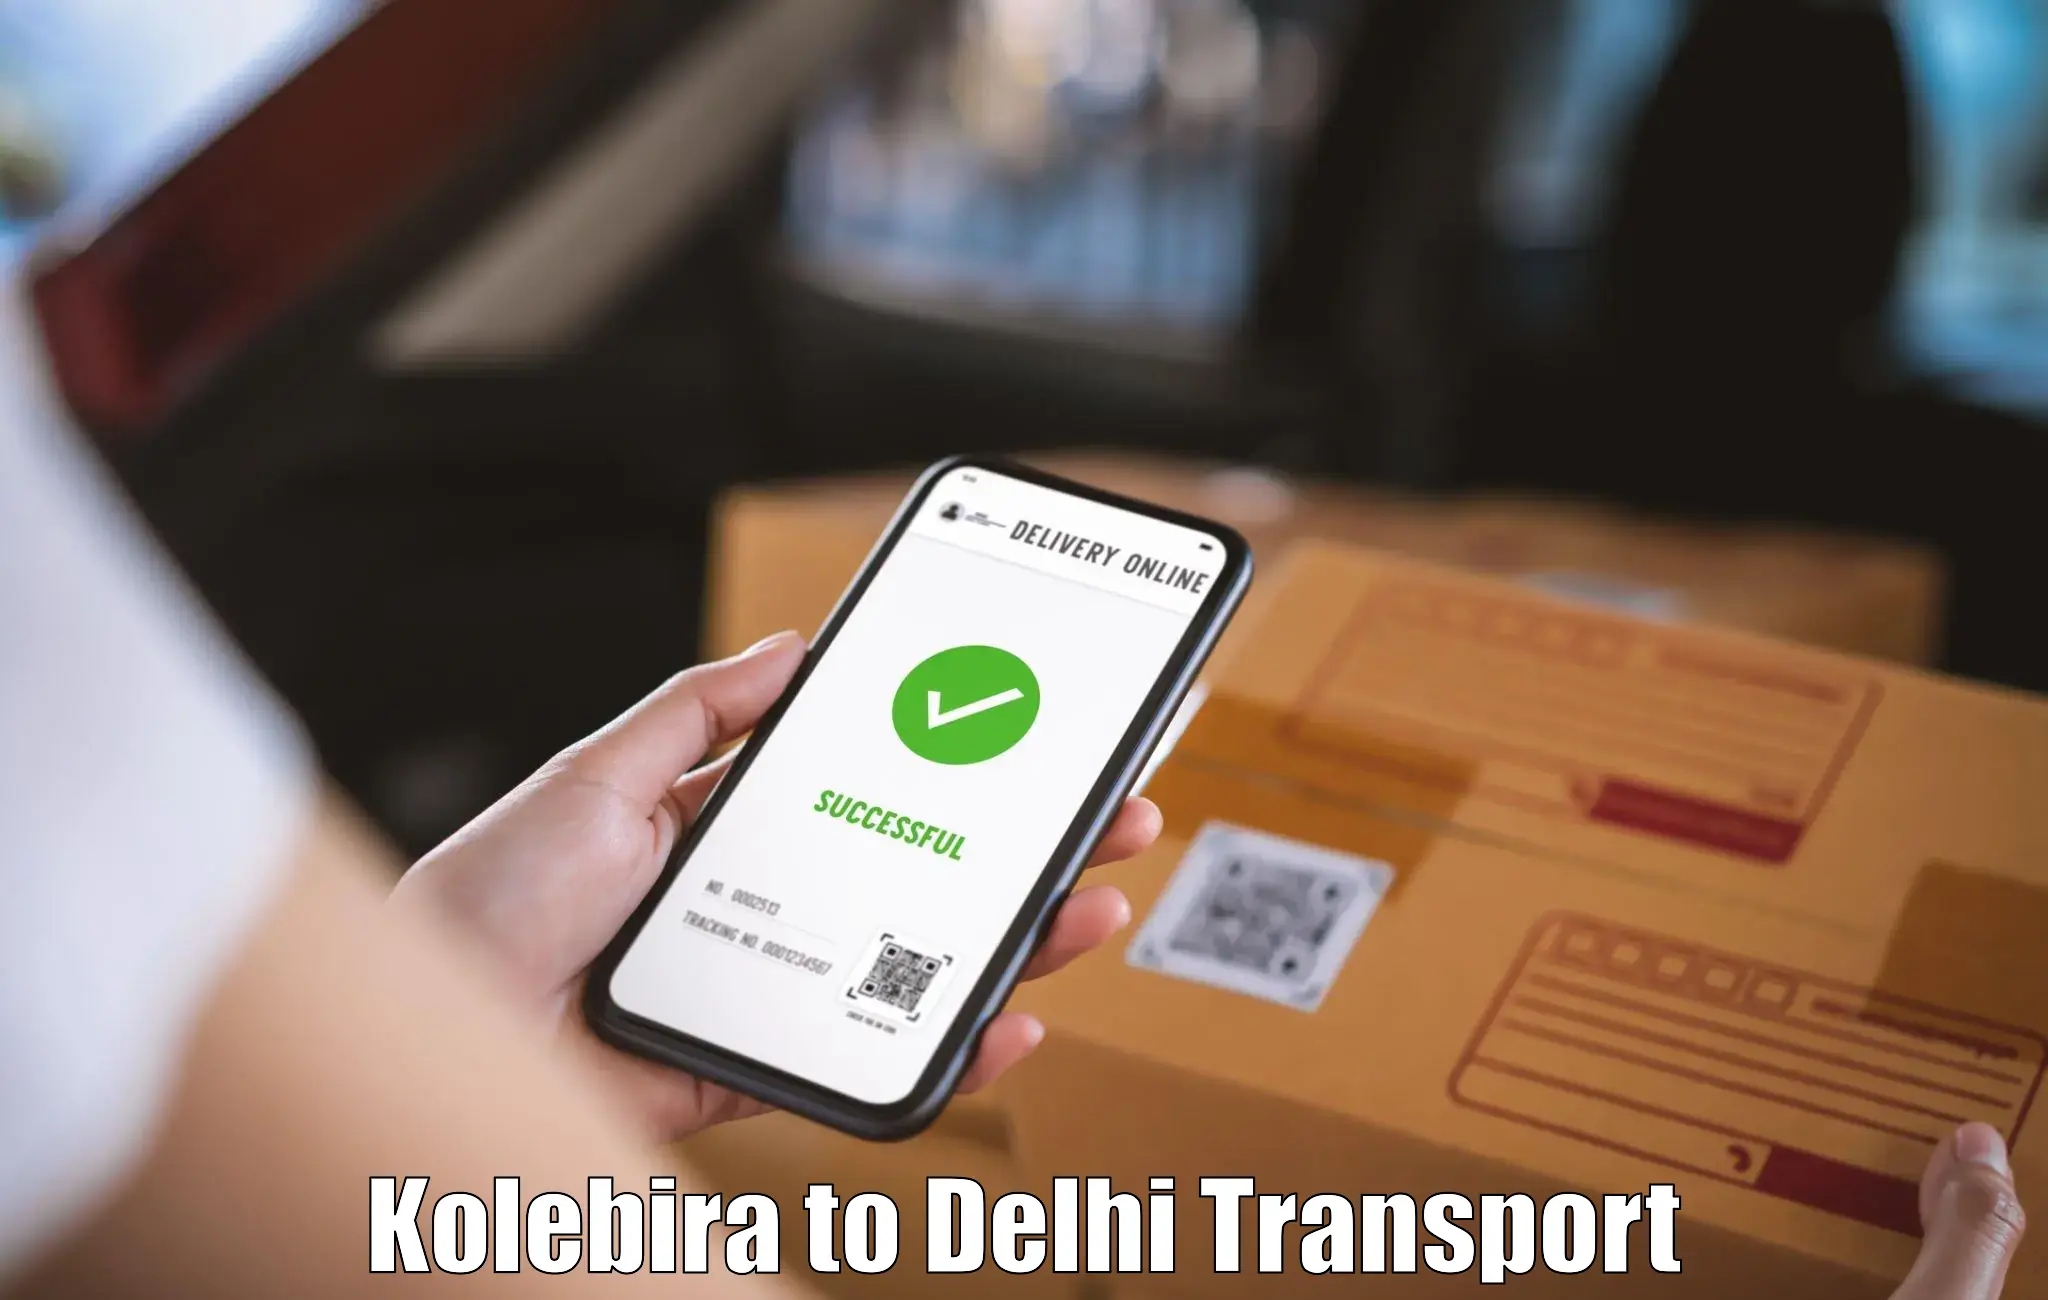 Nearest transport service Kolebira to East Delhi